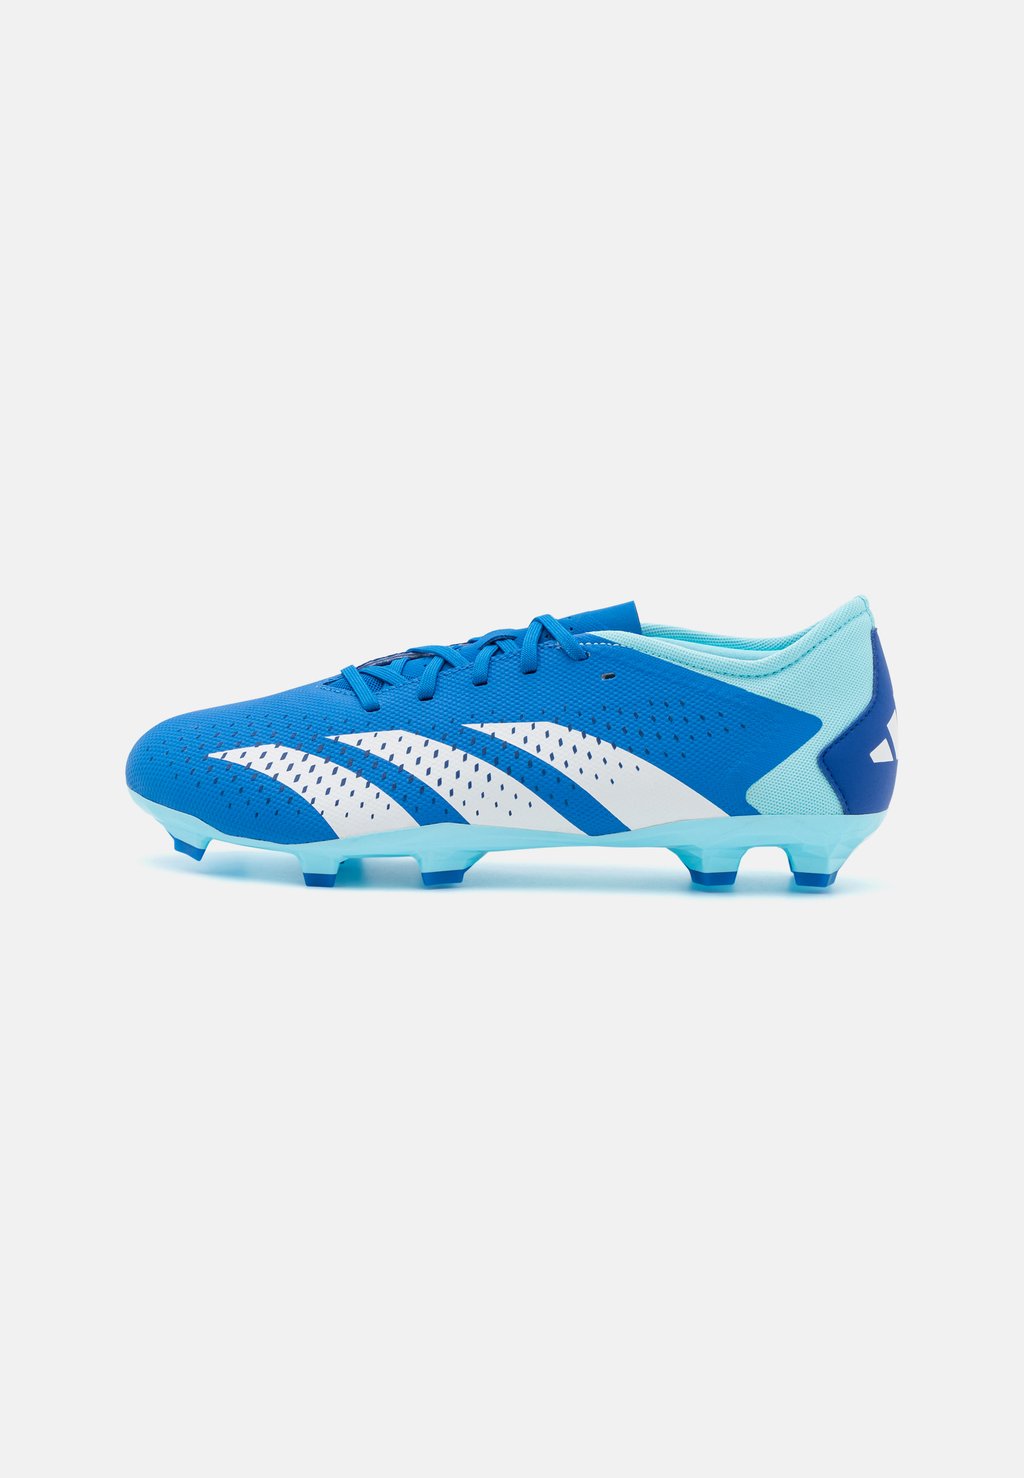 Футбольные бутсы с шипами Predator Accuracy Adidas, цвет bright royal/footwear white/bliss blue